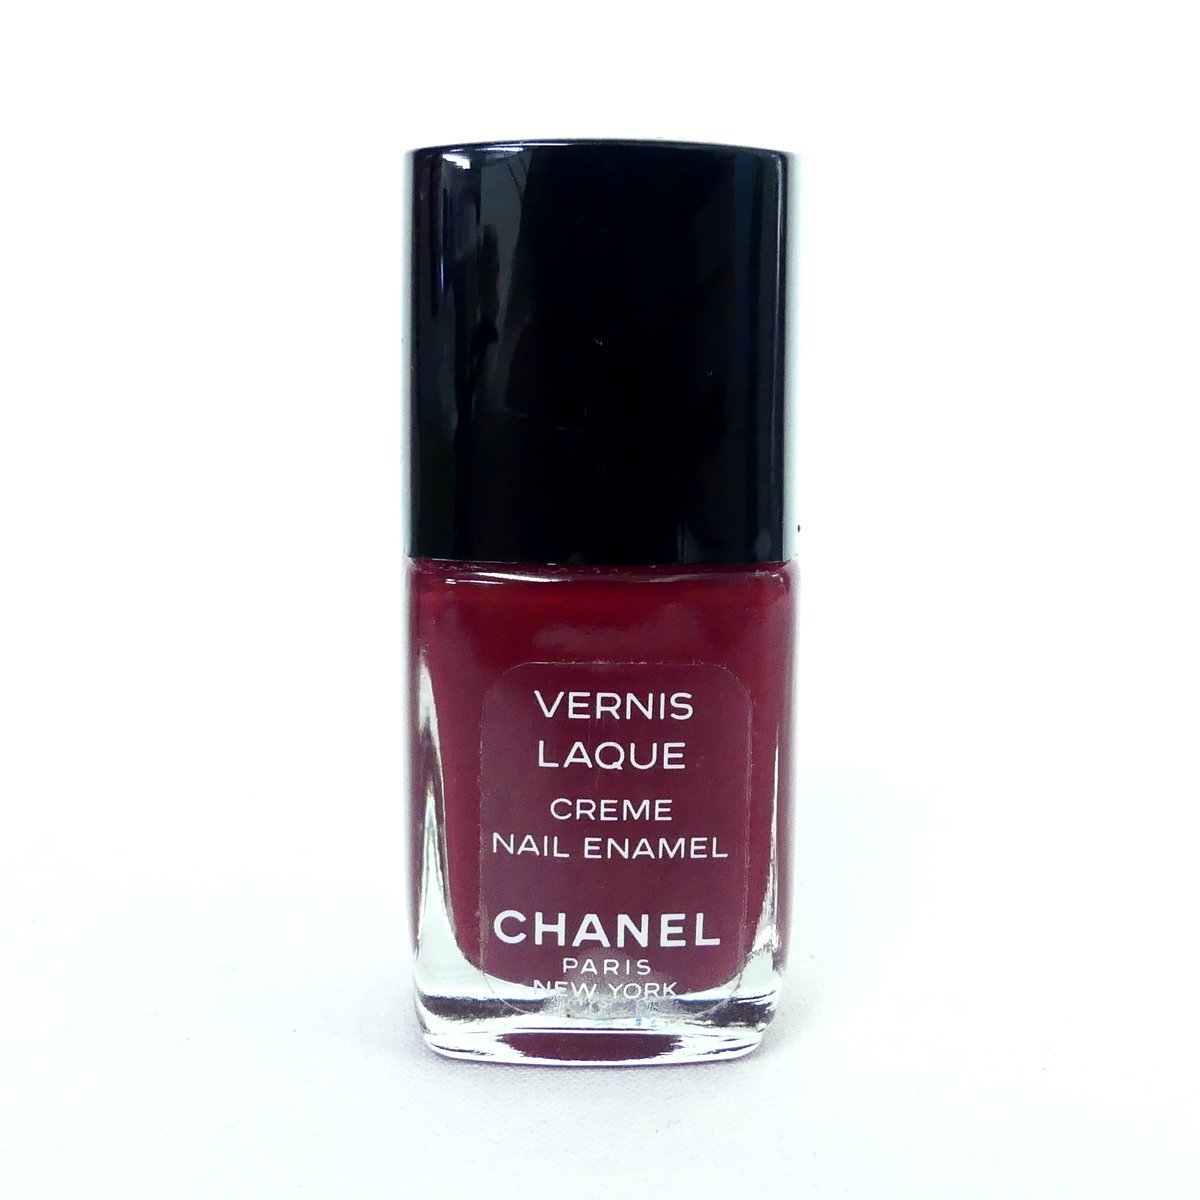 CHANEL Chanel VERNIS LAQUE ногти эмаль ROSE DAWN 13ml прекрасный товар /2309C